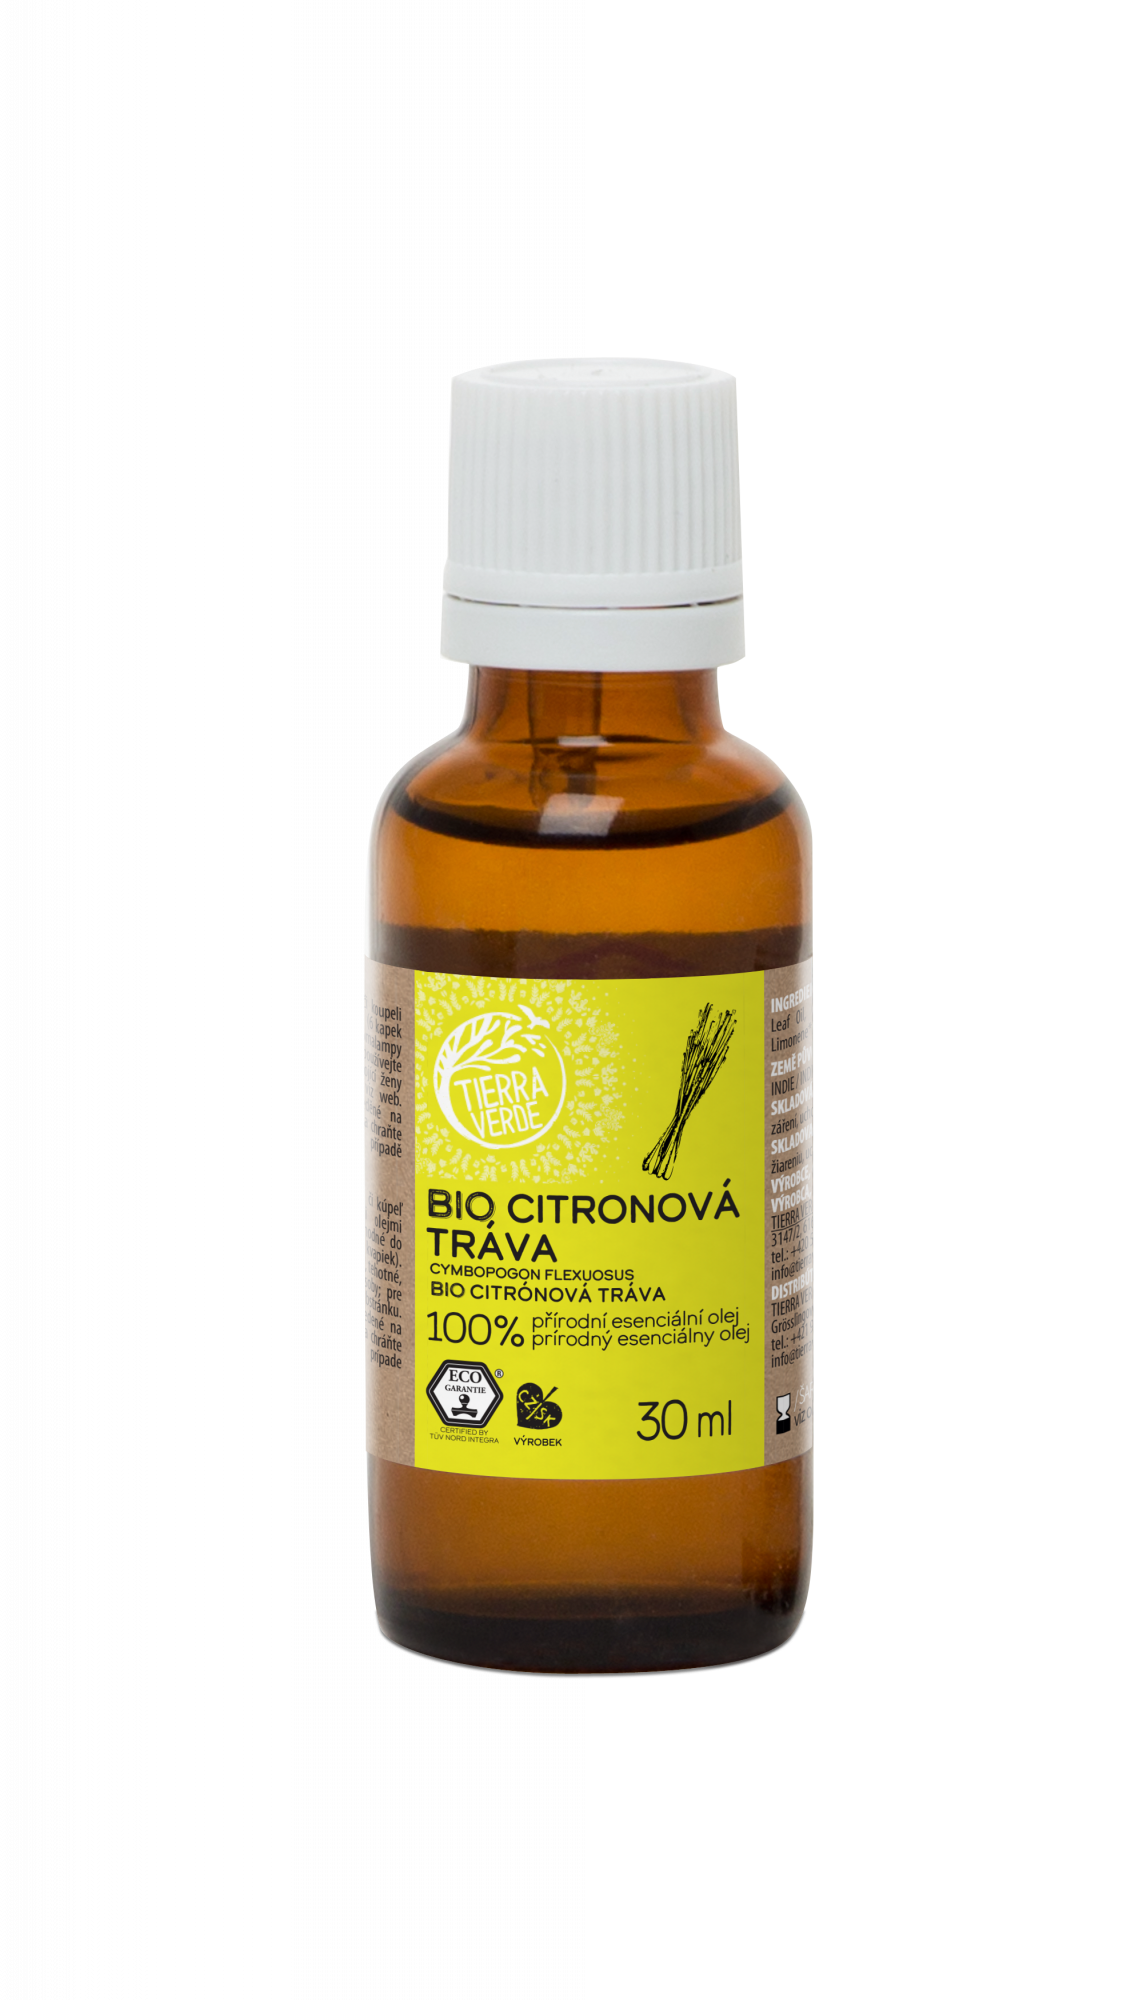 Tierra Verde Esenciální olej Citronová tráva BIO 30 ml - pomůže při vyčerpání Tierra Verde